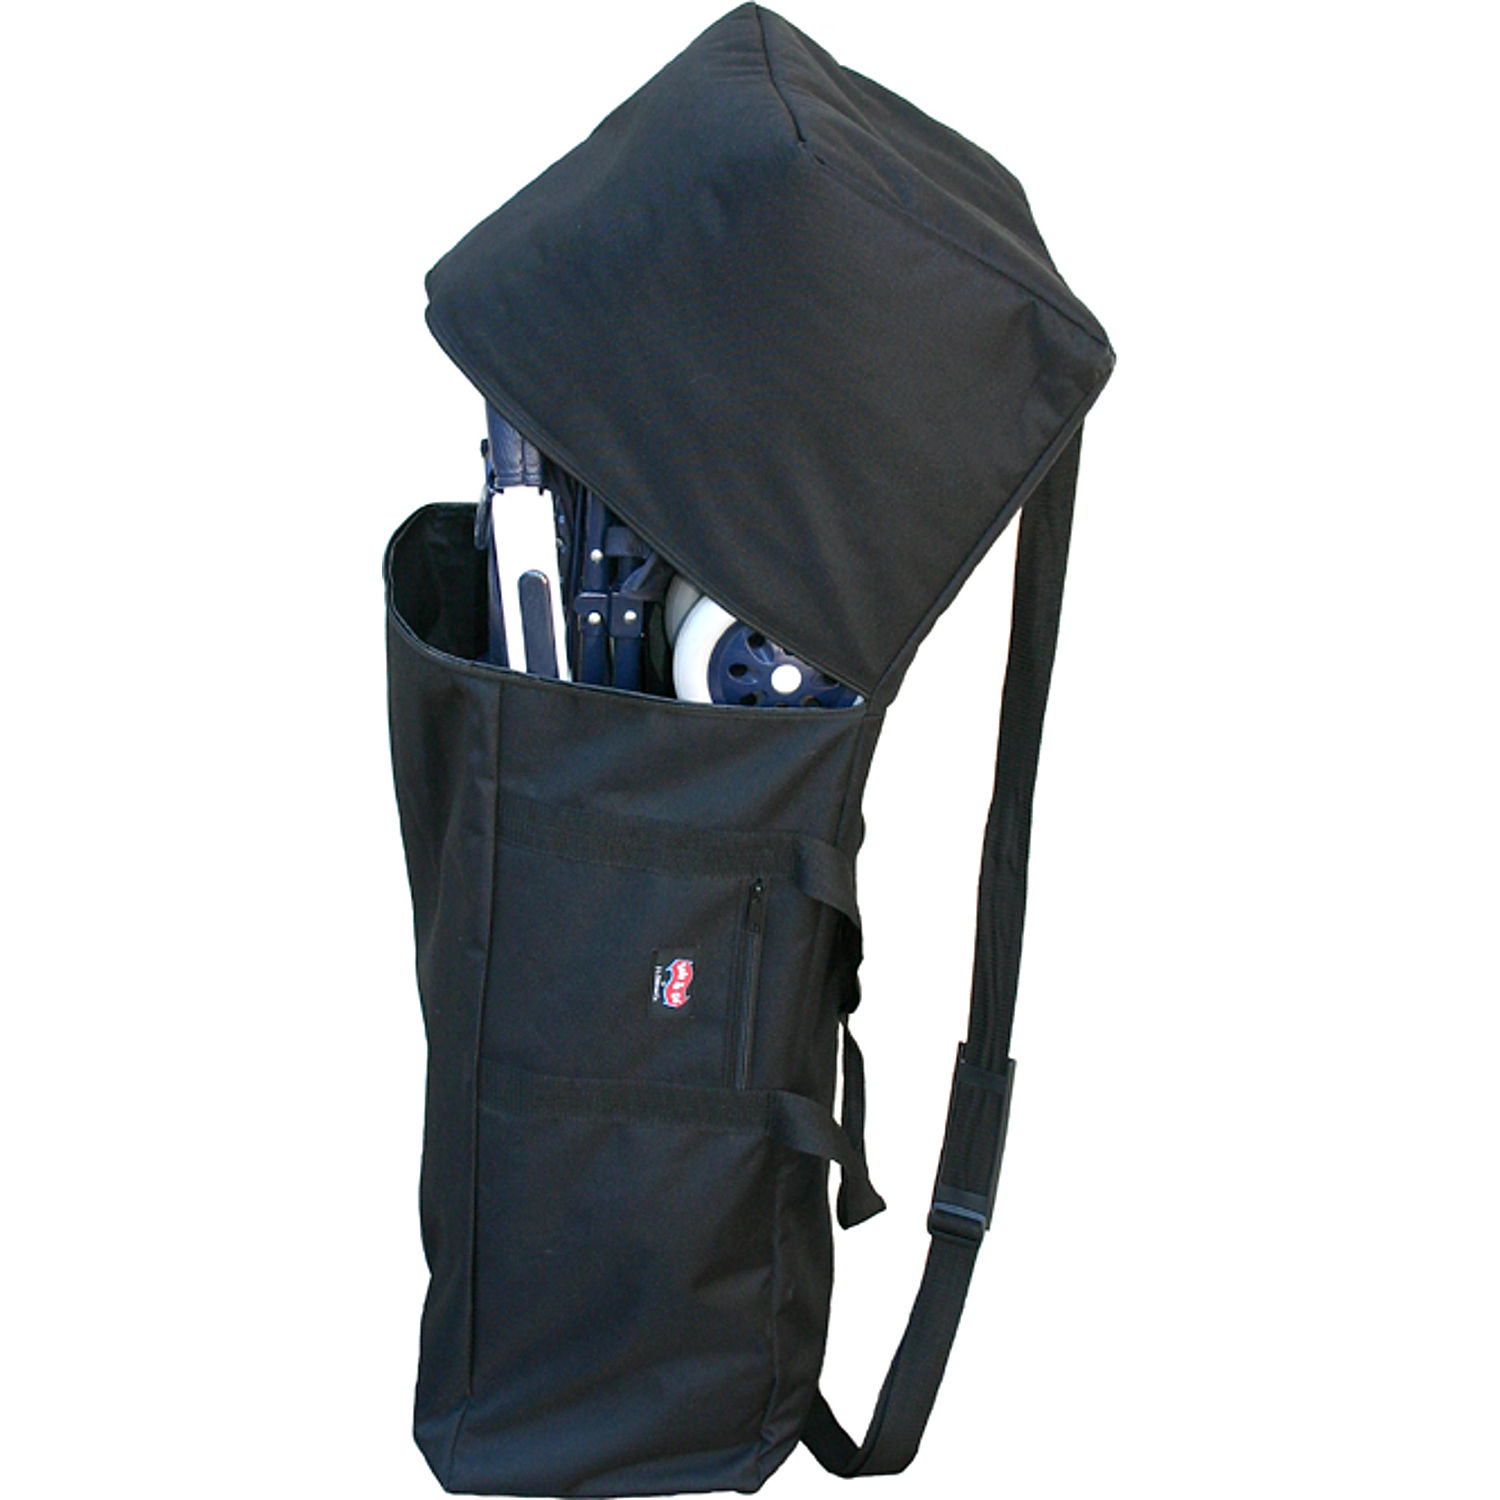 Childress Padded Umbrella Stroller Deluxe Travel Bag